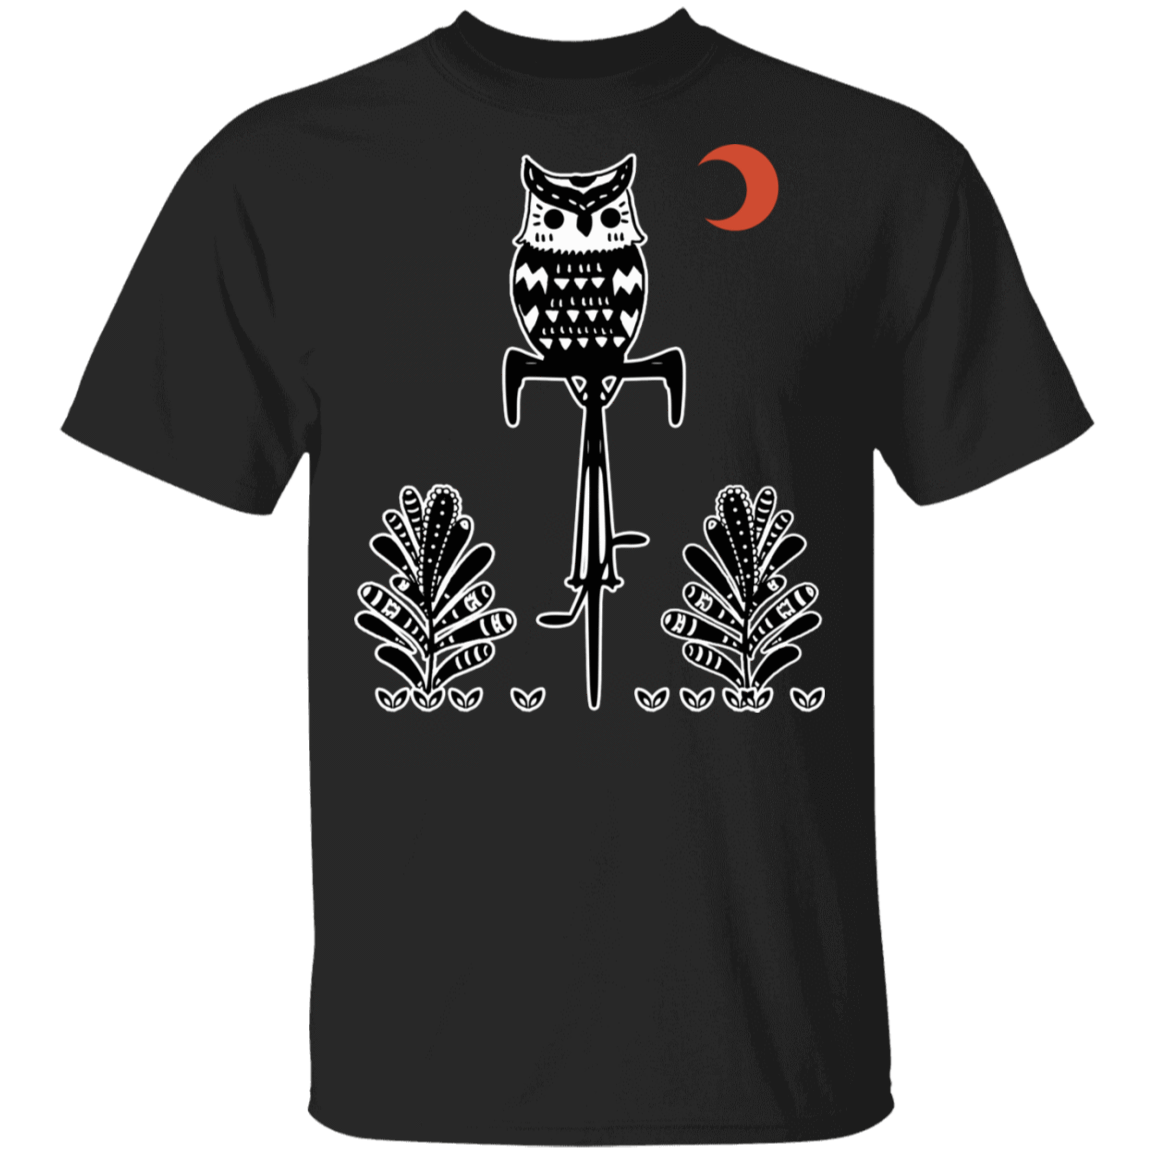 T-Shirts Black / S Barn Owl On A Bike T-Shirt